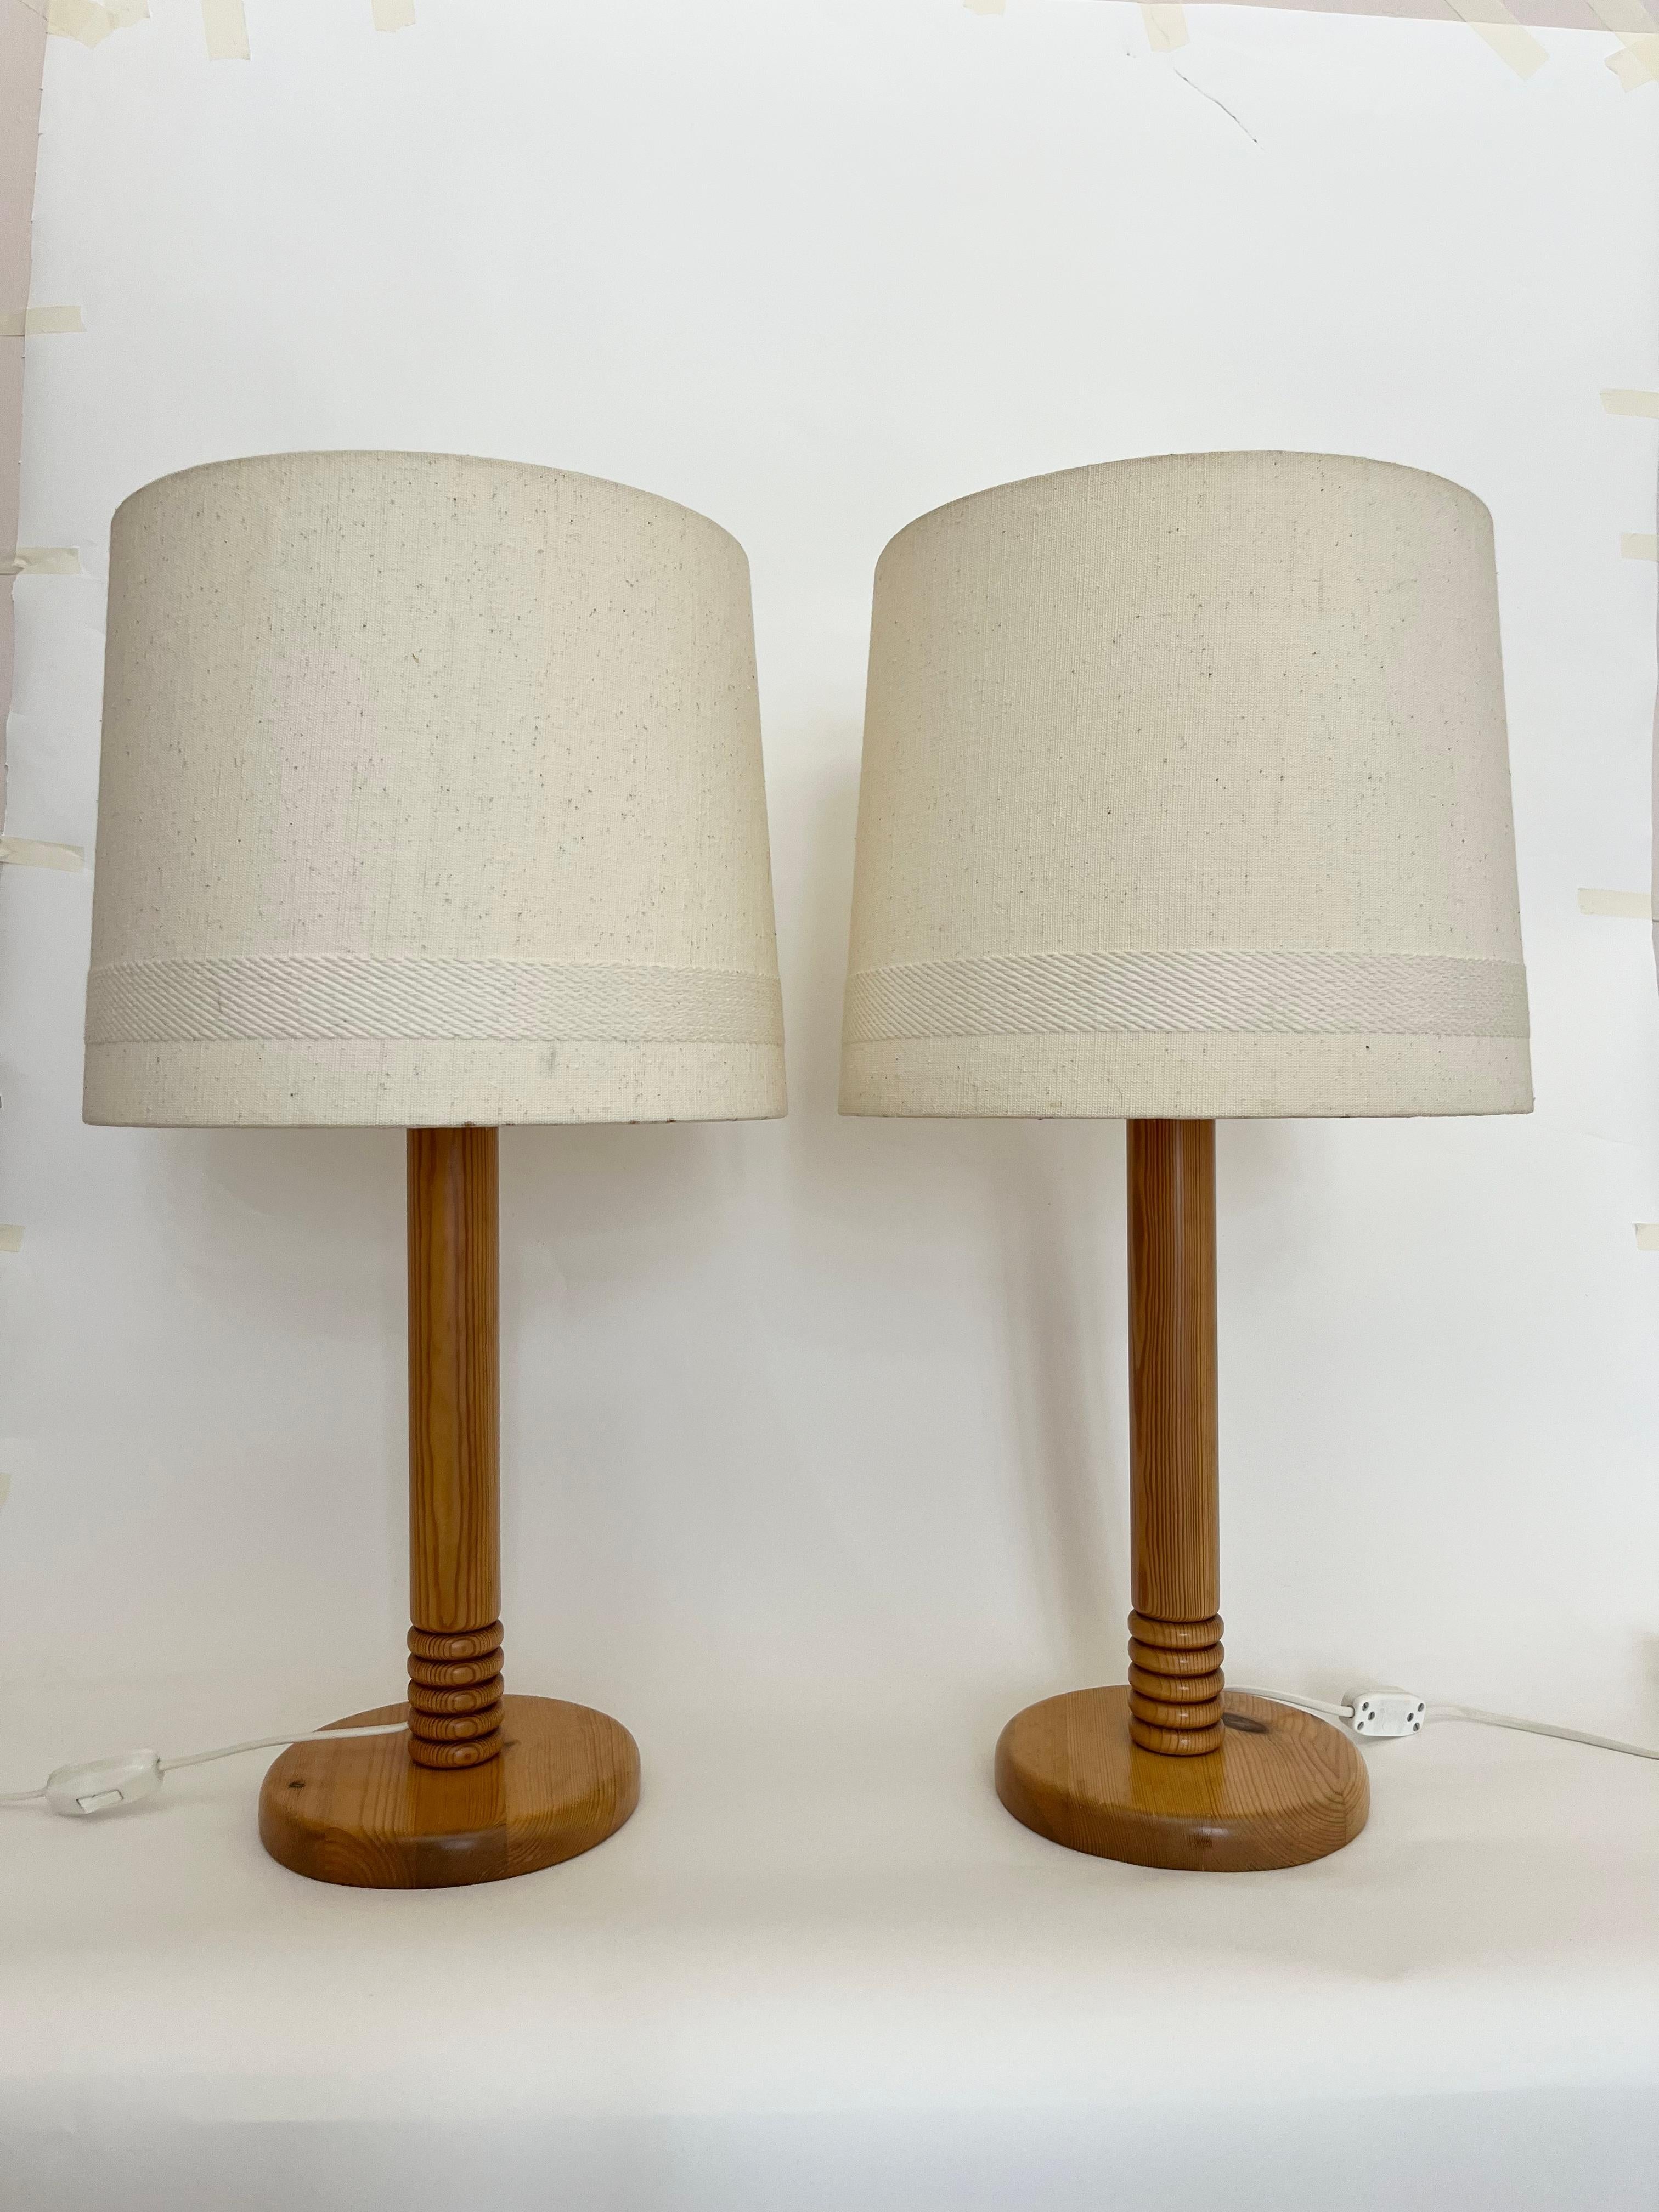 Cette paire de lampes de table danoise en bois, haute et discrète, a été fabriquée dans les années 1970. Livré avec les abat-jour d'origine en nuance ivoire clair avec décorations/détails tissés. 

Hauteur : 66 cm avec l'abat-jour // Hauteur : 43 cm